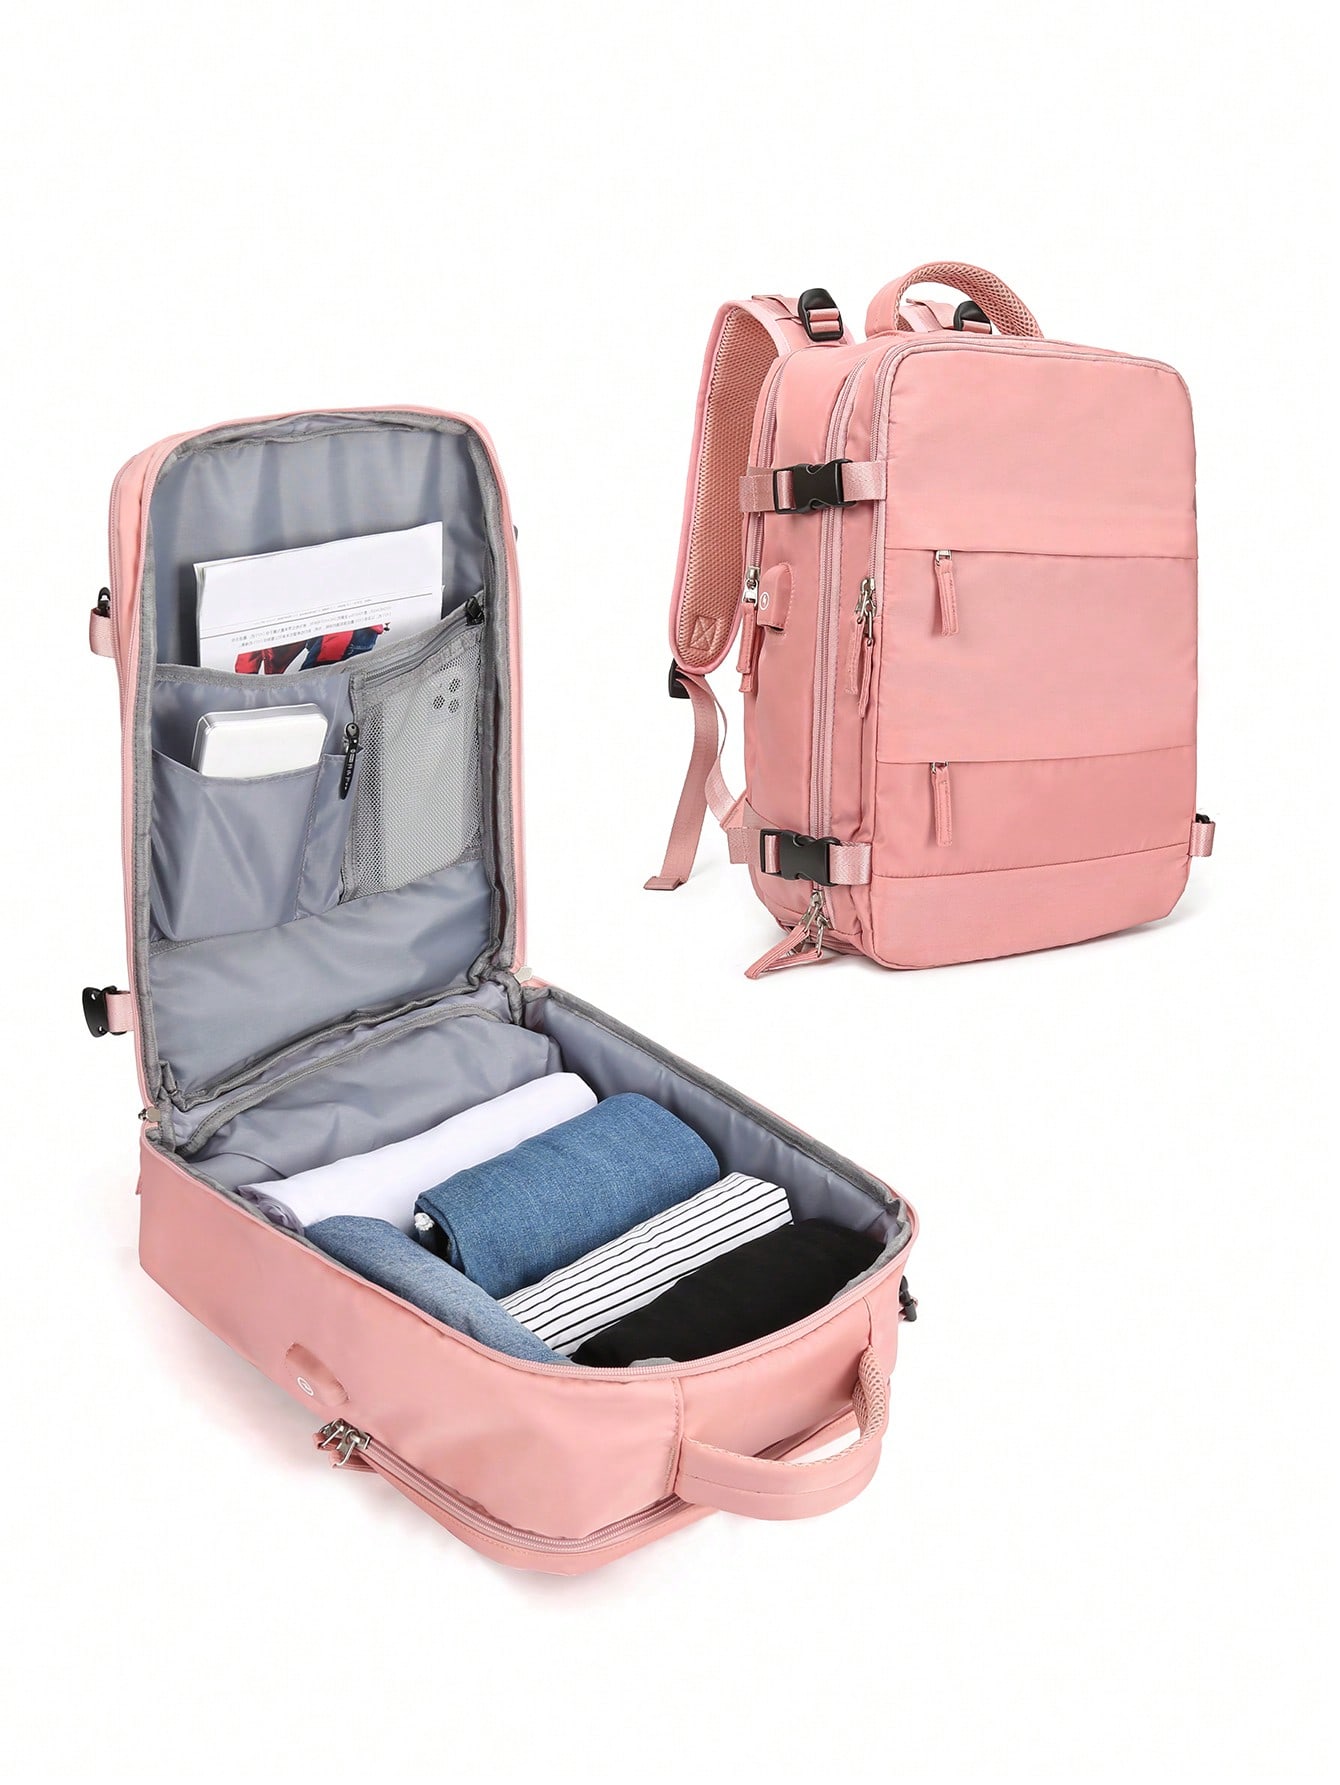 ранцевый треугольный рюкзак с рисунком в виде маджонга рюкзак слинг canfeng дорожный походный рюкзак веревочная сумка через плечо Женский дорожный рюкзак с USB-портом для зарядки, розовый